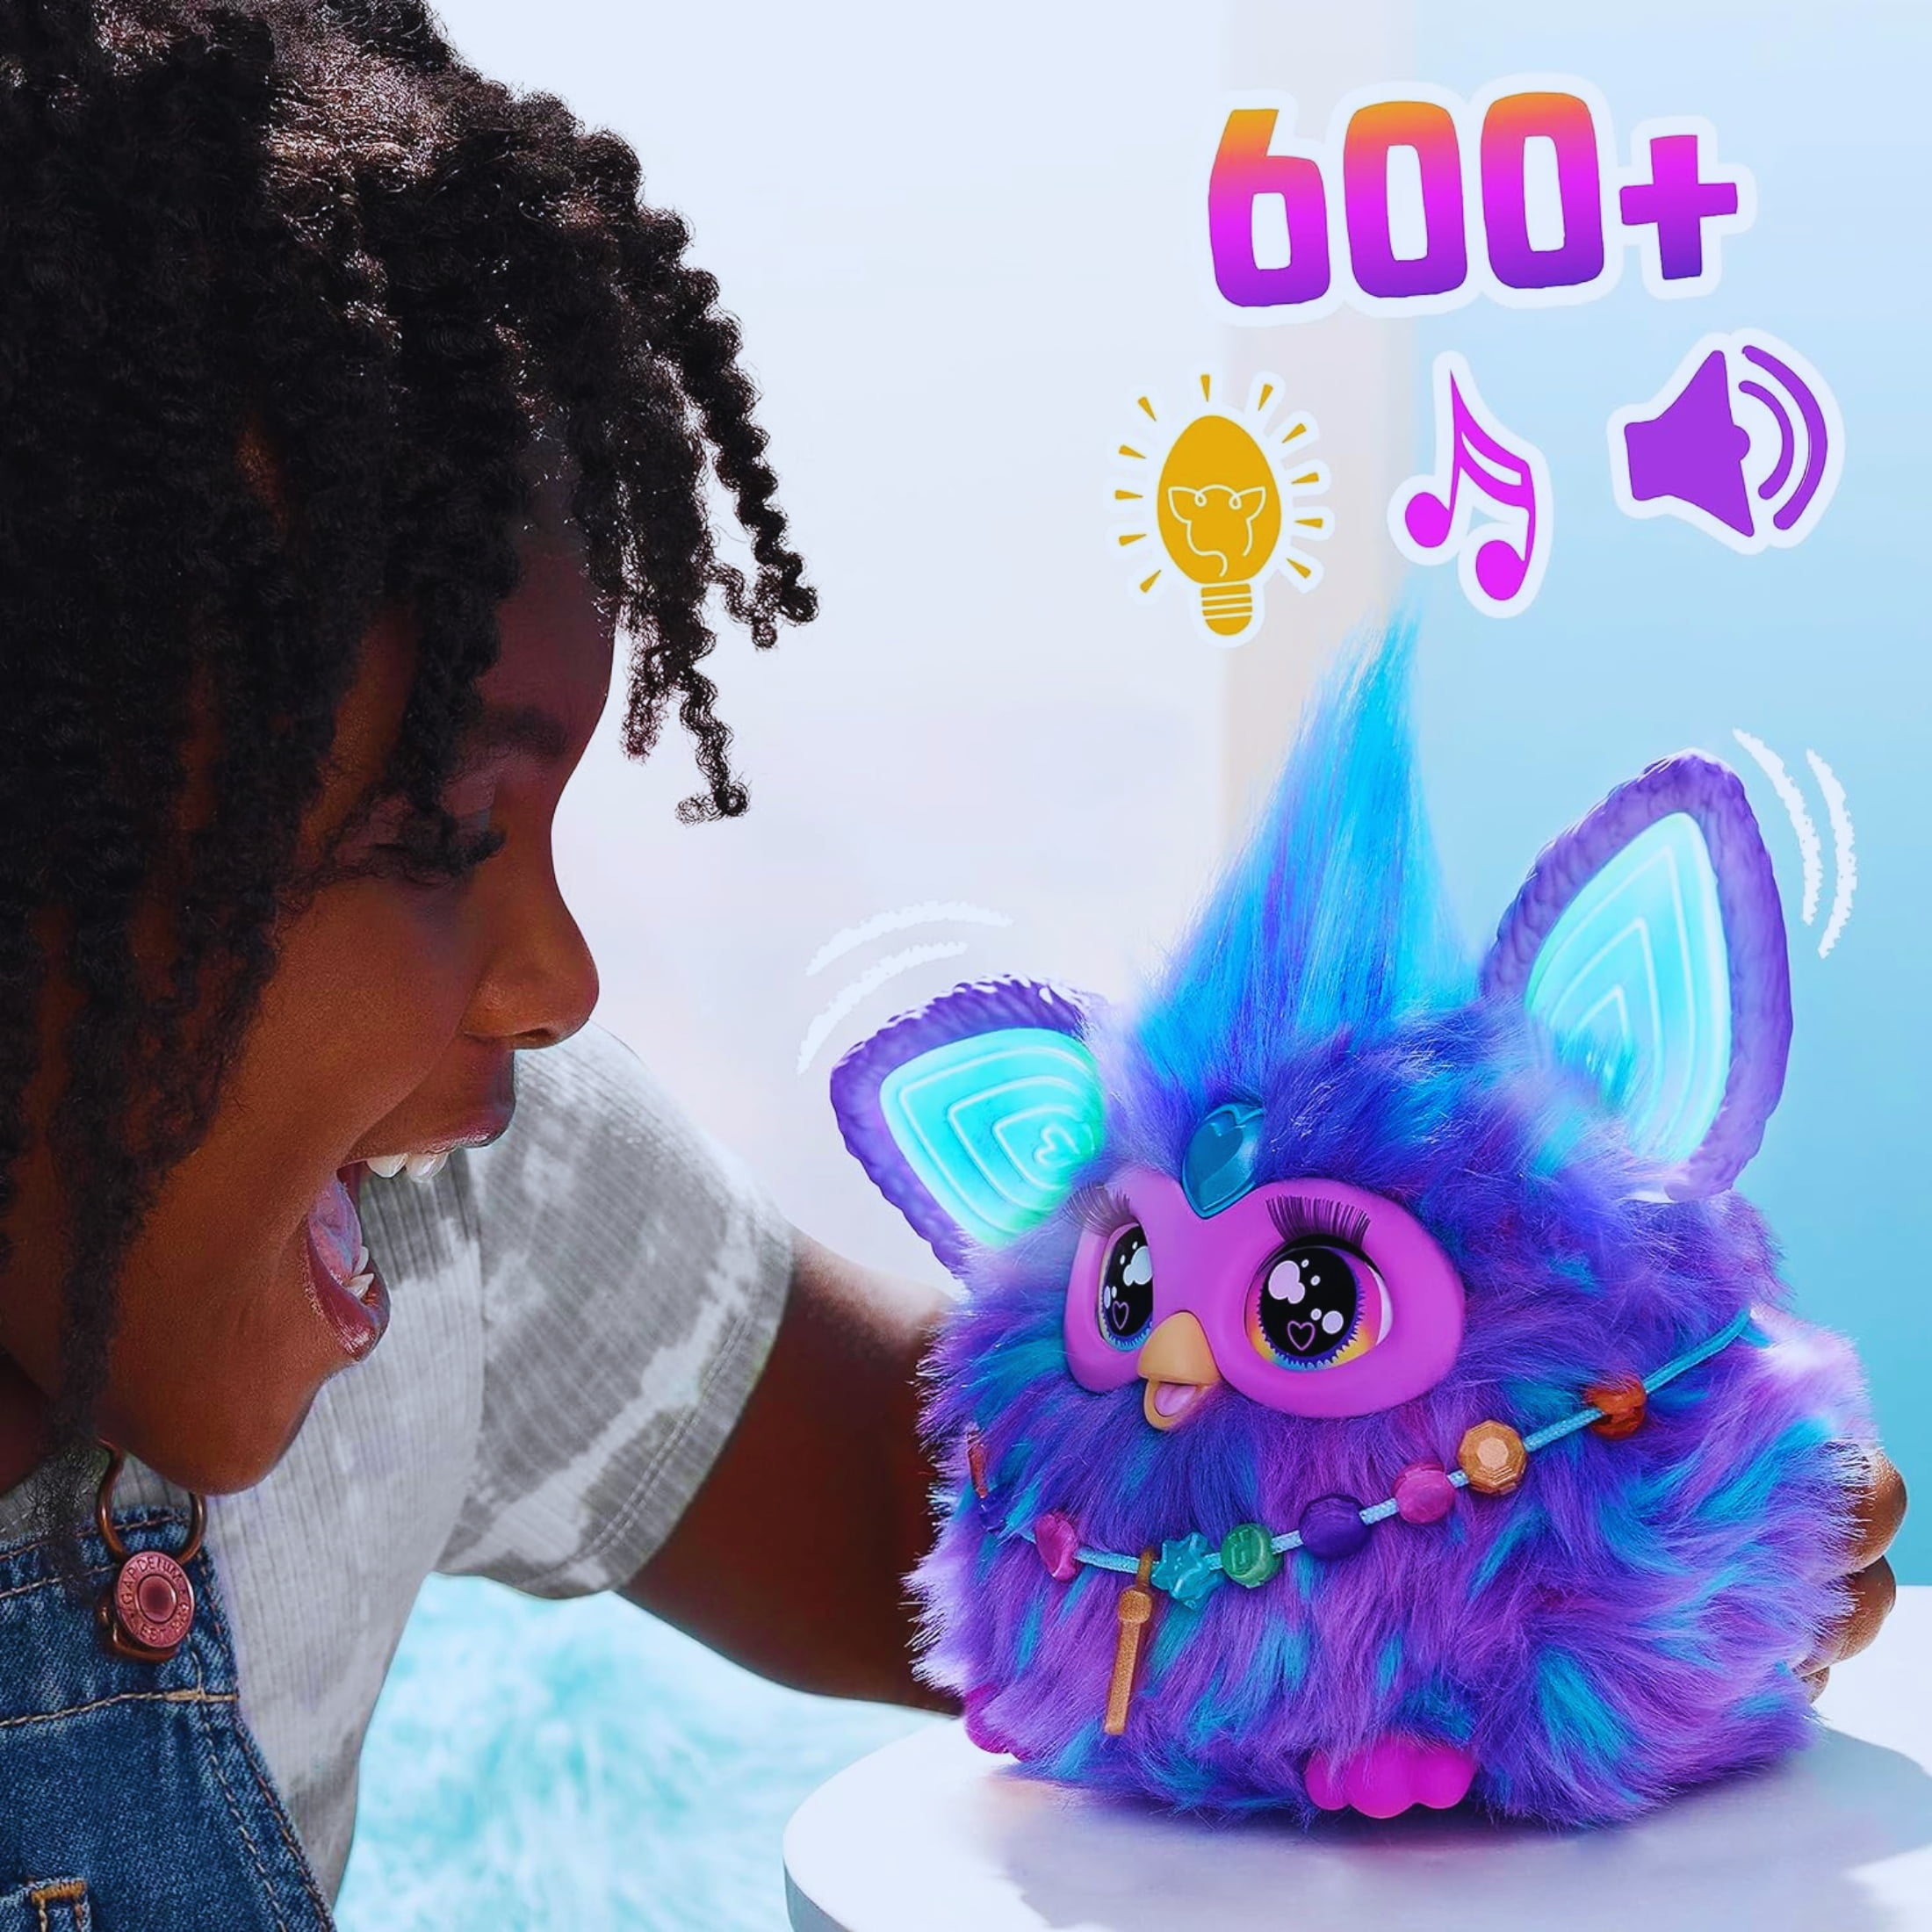 Furby violet, 15 accessoires, peluche interactive pour filles et